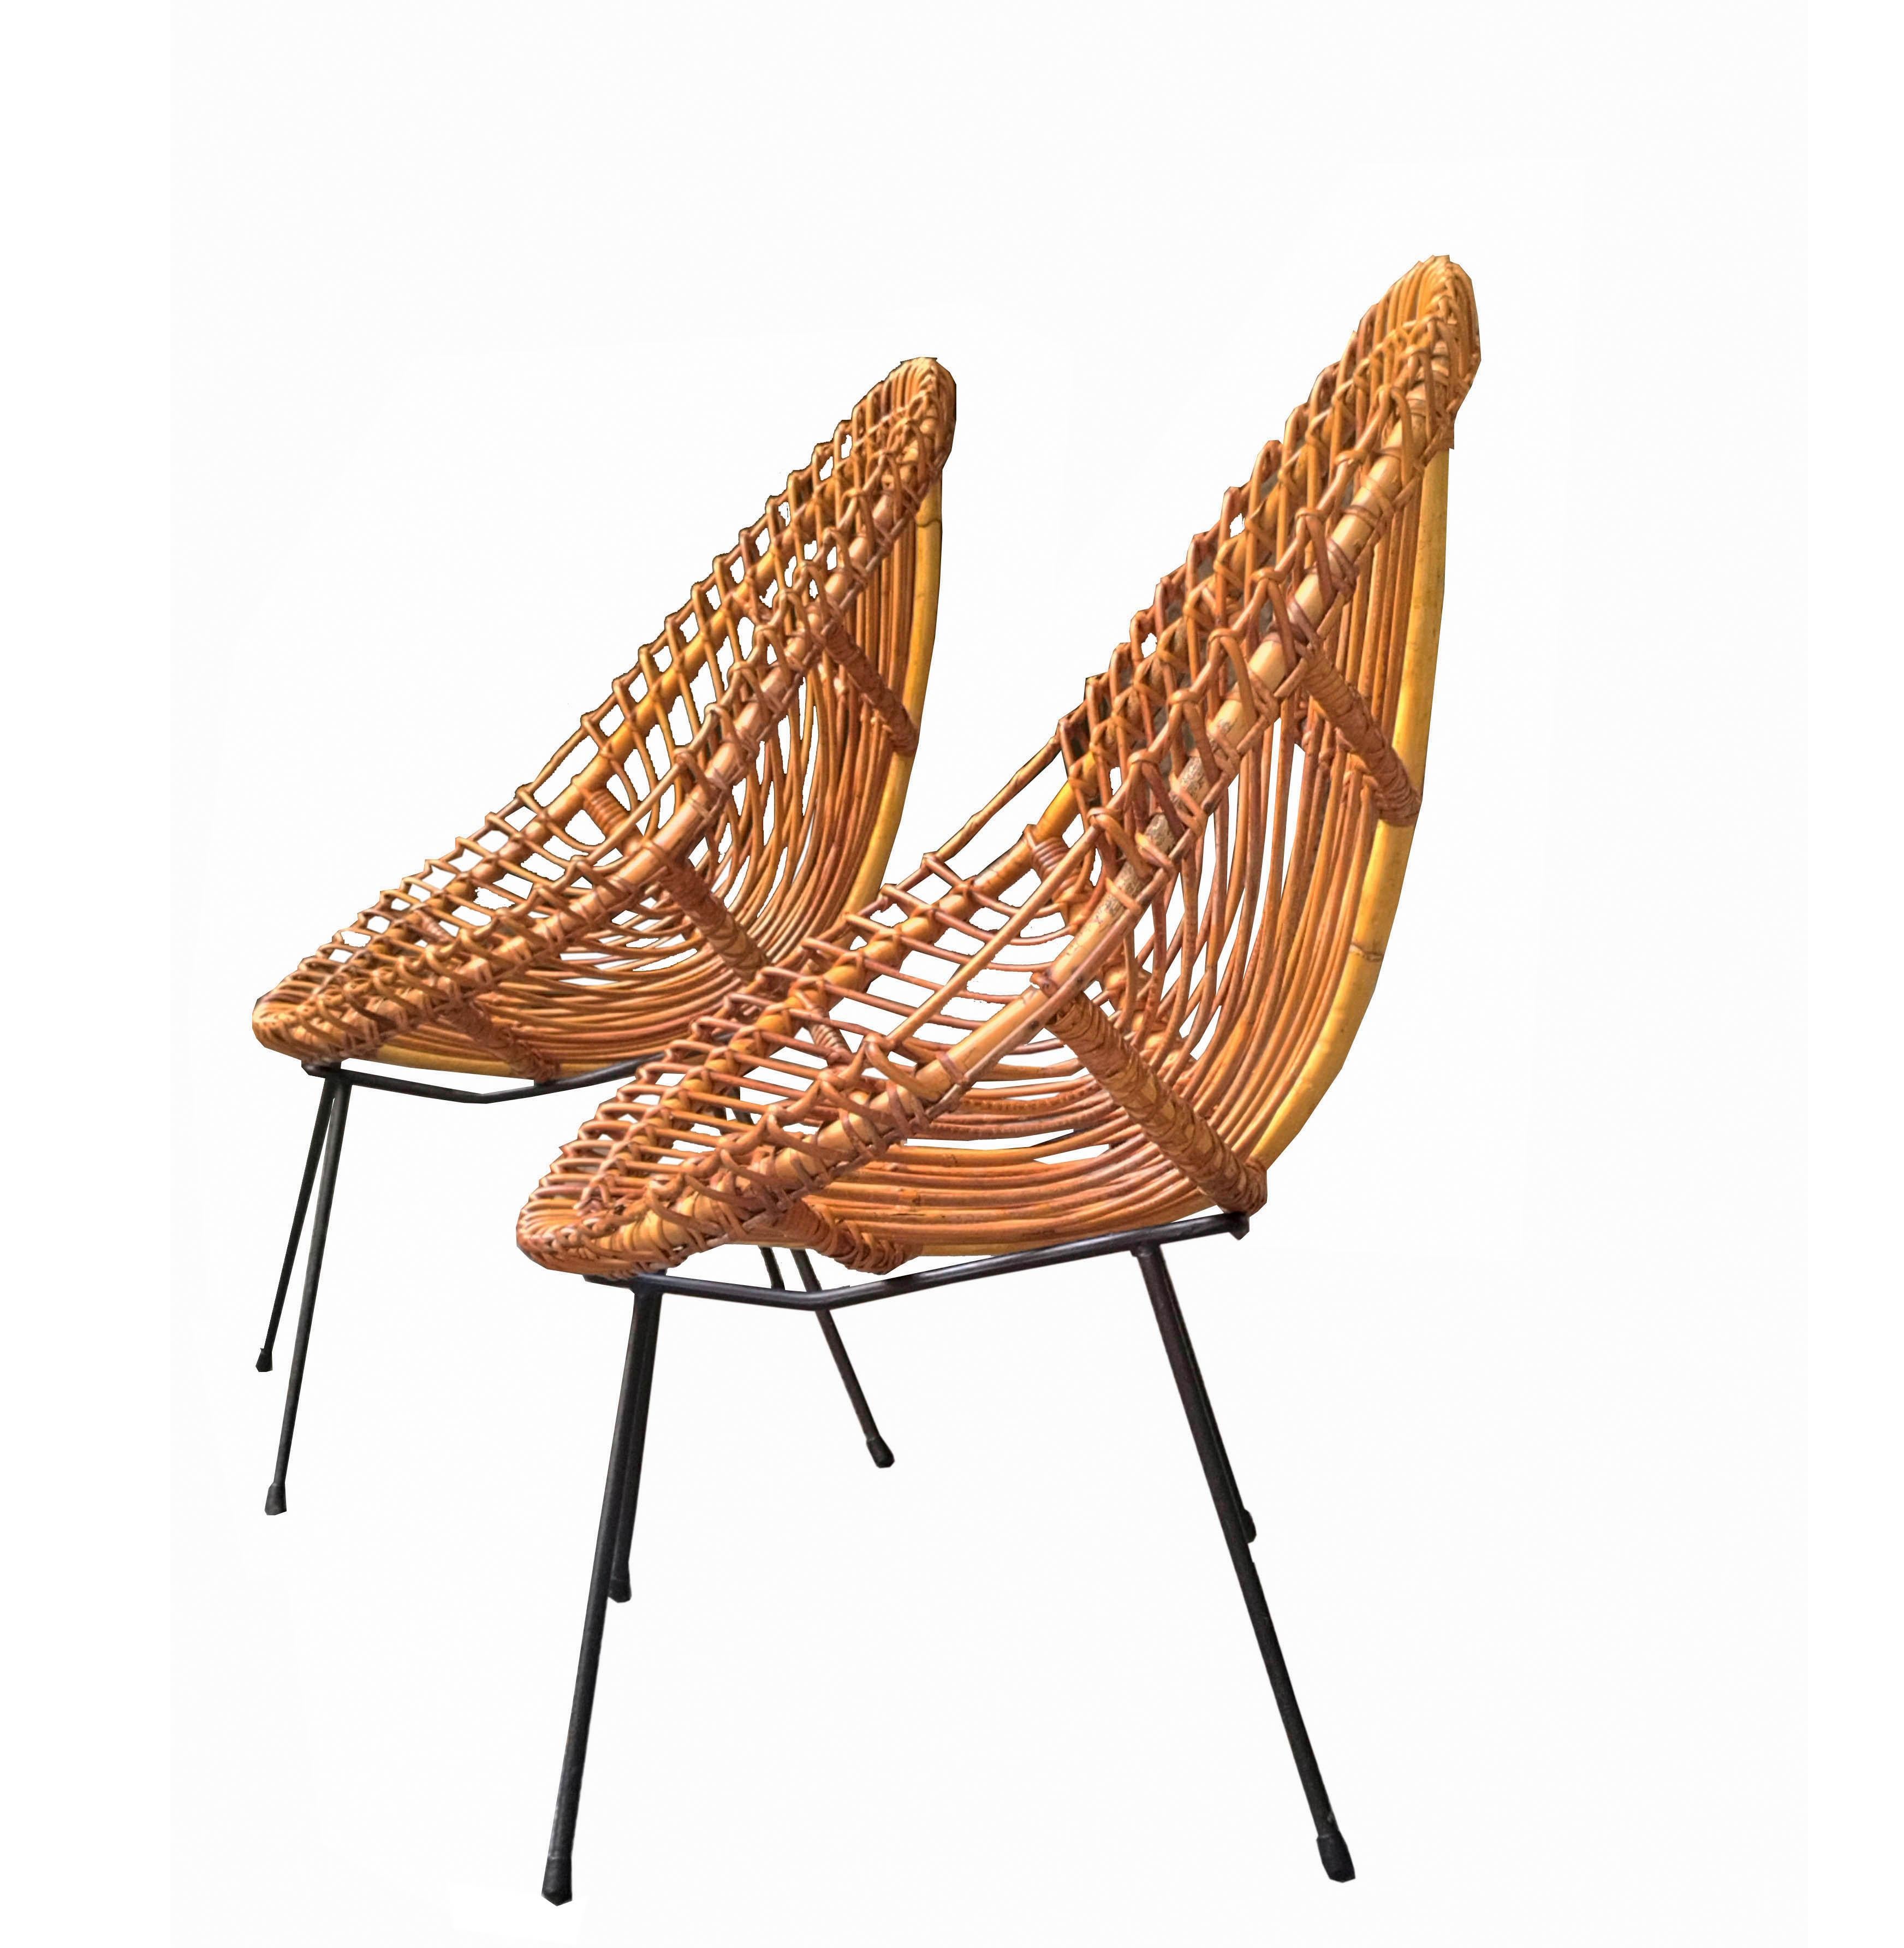 Paire de fauteuils conçus par Franco Albini dans les années 1960. Sièges légers et confortables en rotin en forme de coquille. Base en métal tubulaire laqué noir. 